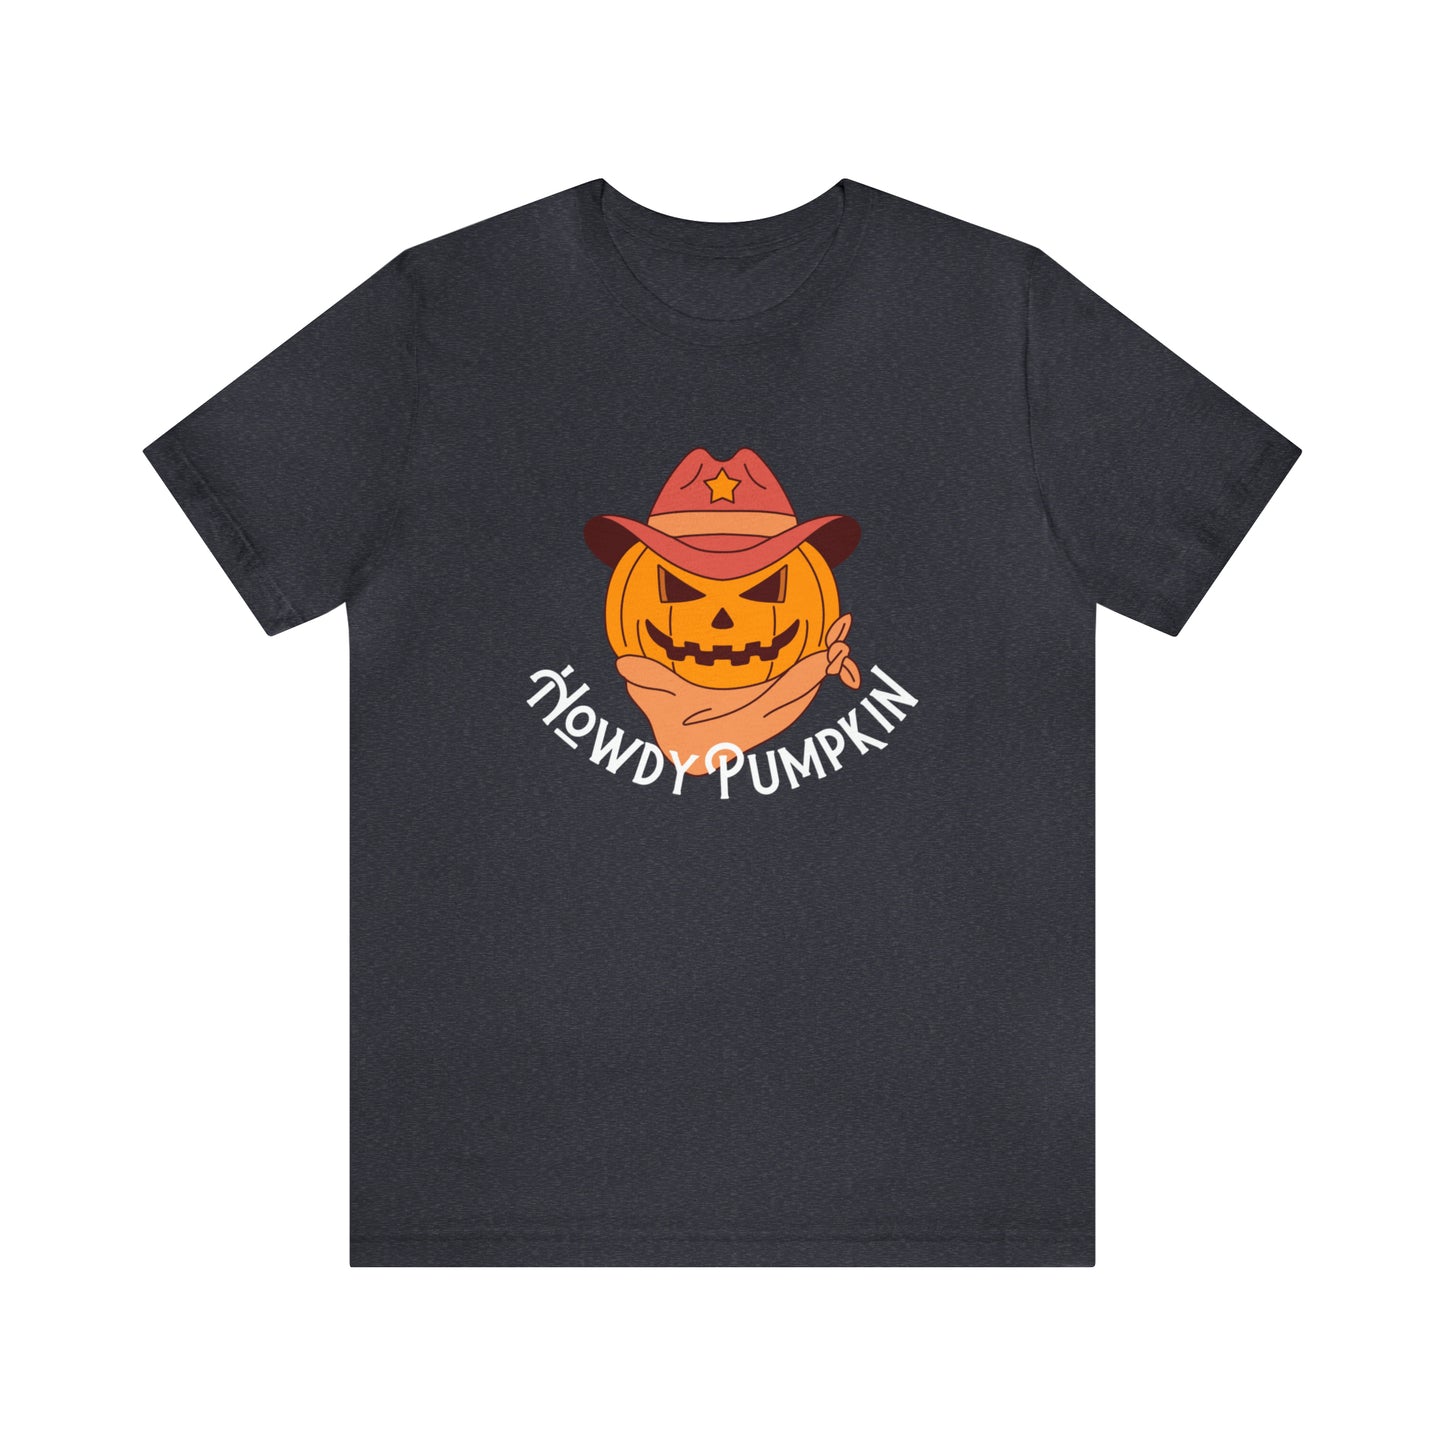 Howdy Pumpkin - Halloween Tee